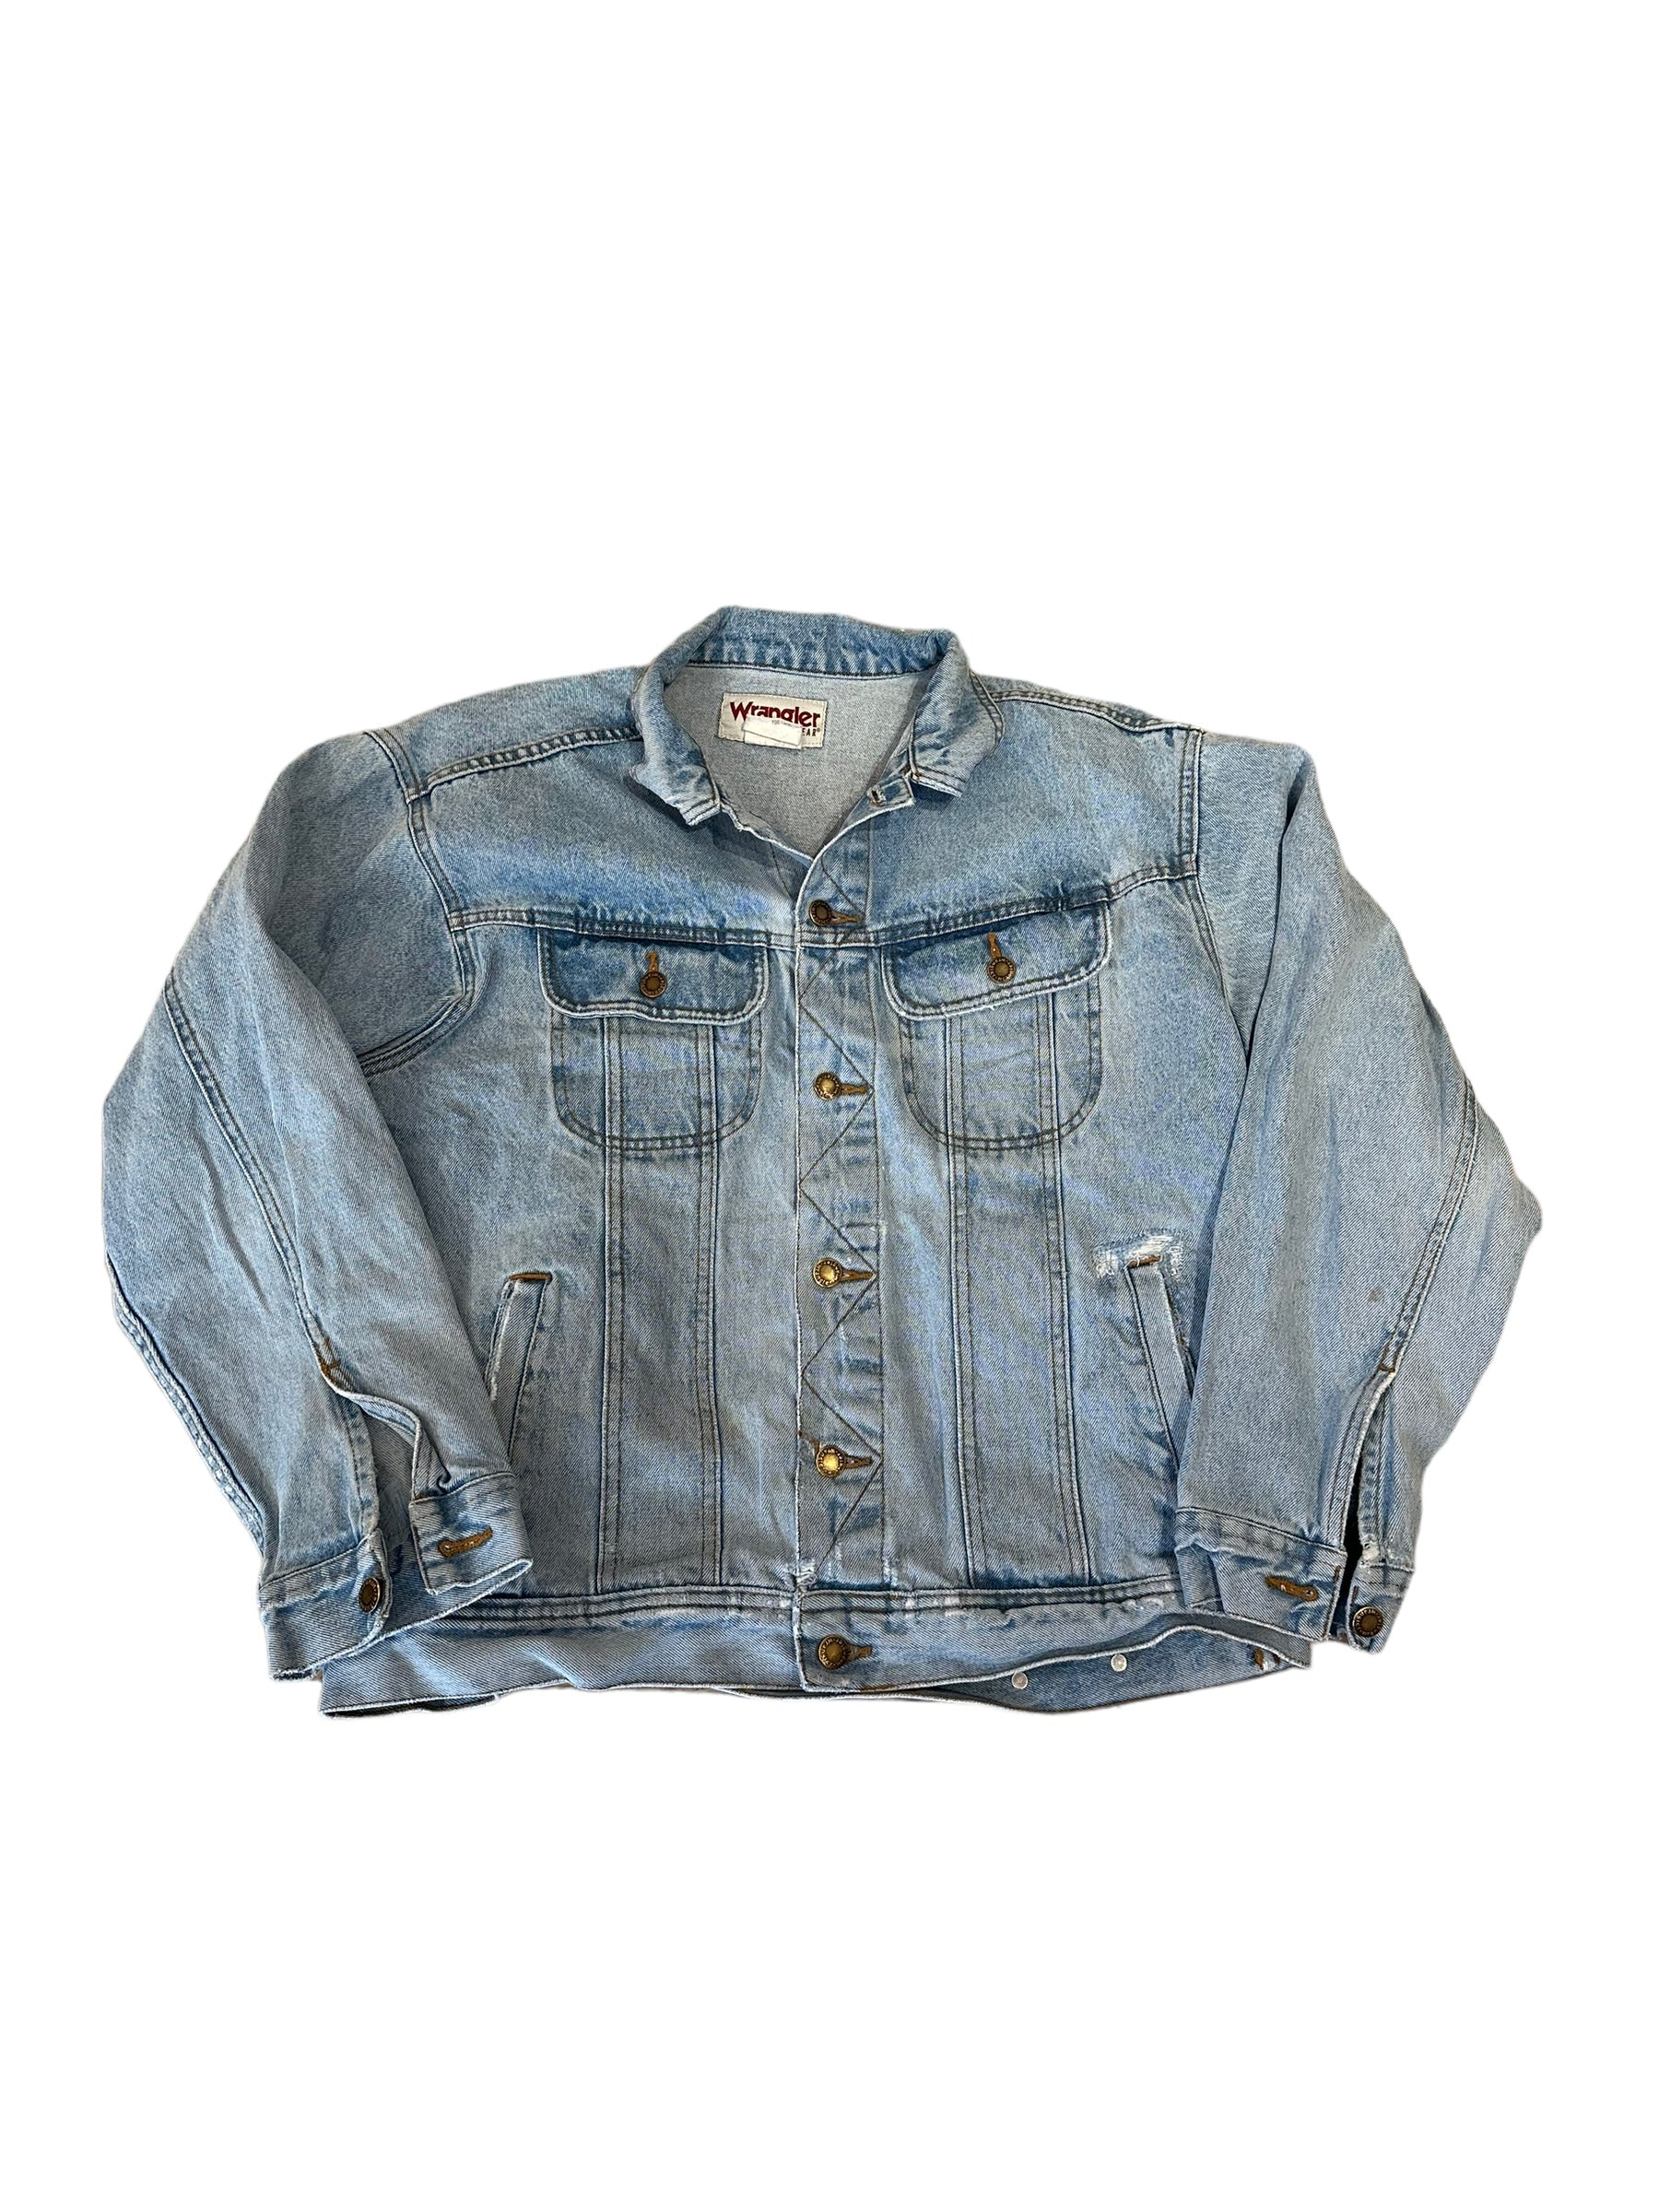 Vintage Wrangler jacket L